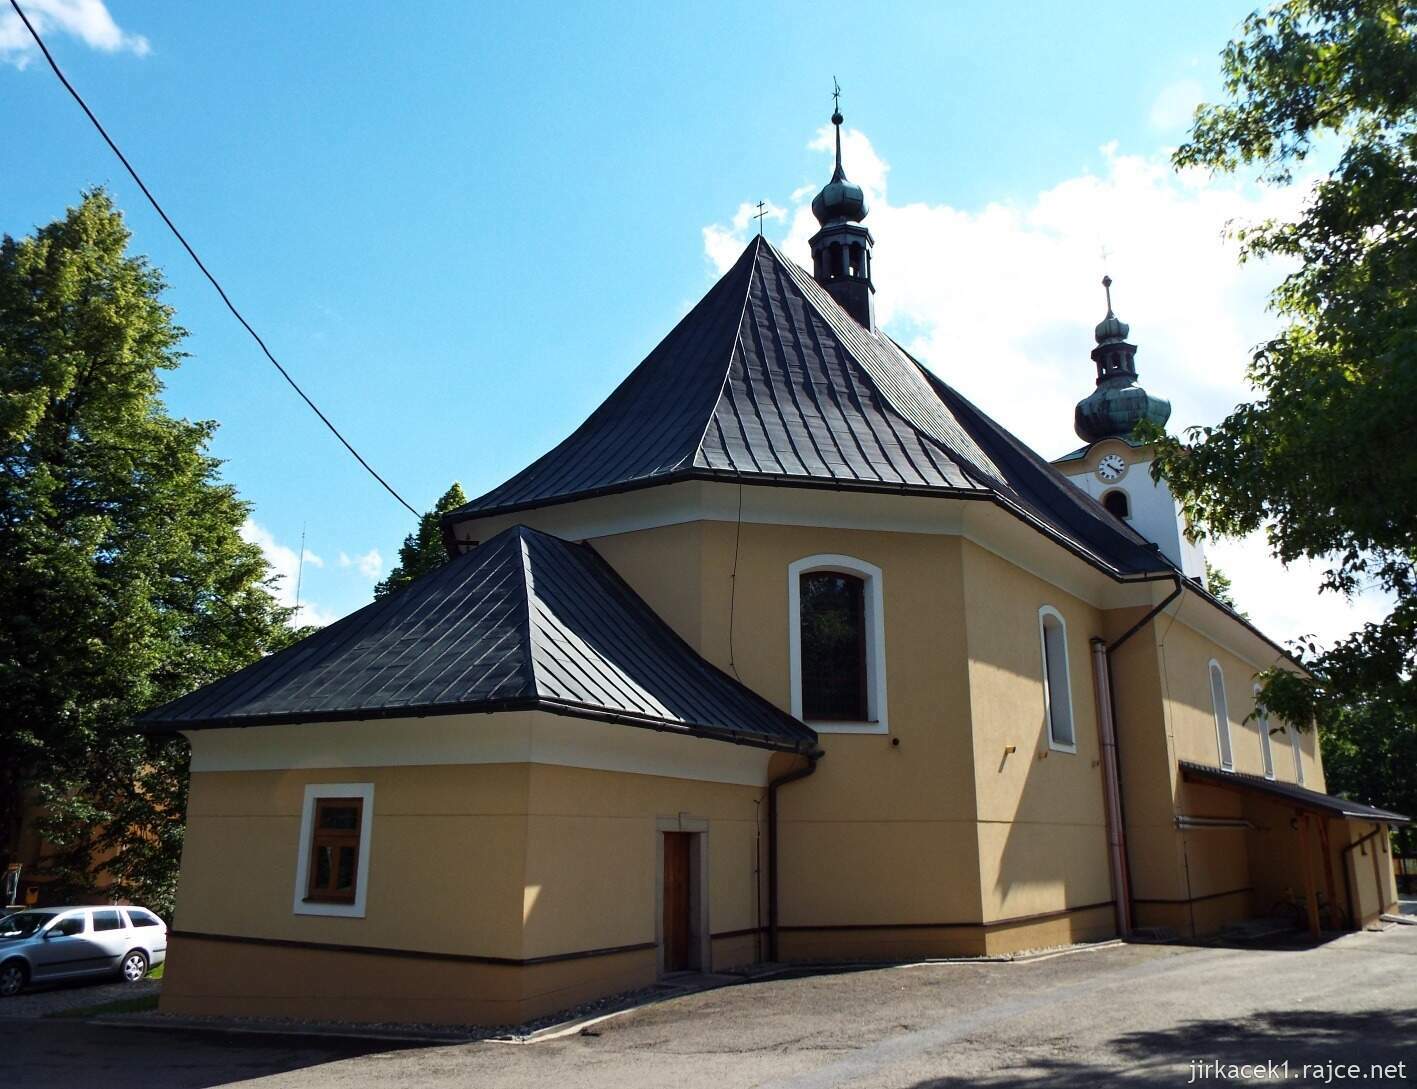 017 - Nový Hrozenkov - kostel sv. Jana Křtitele 14 - zadní pohled